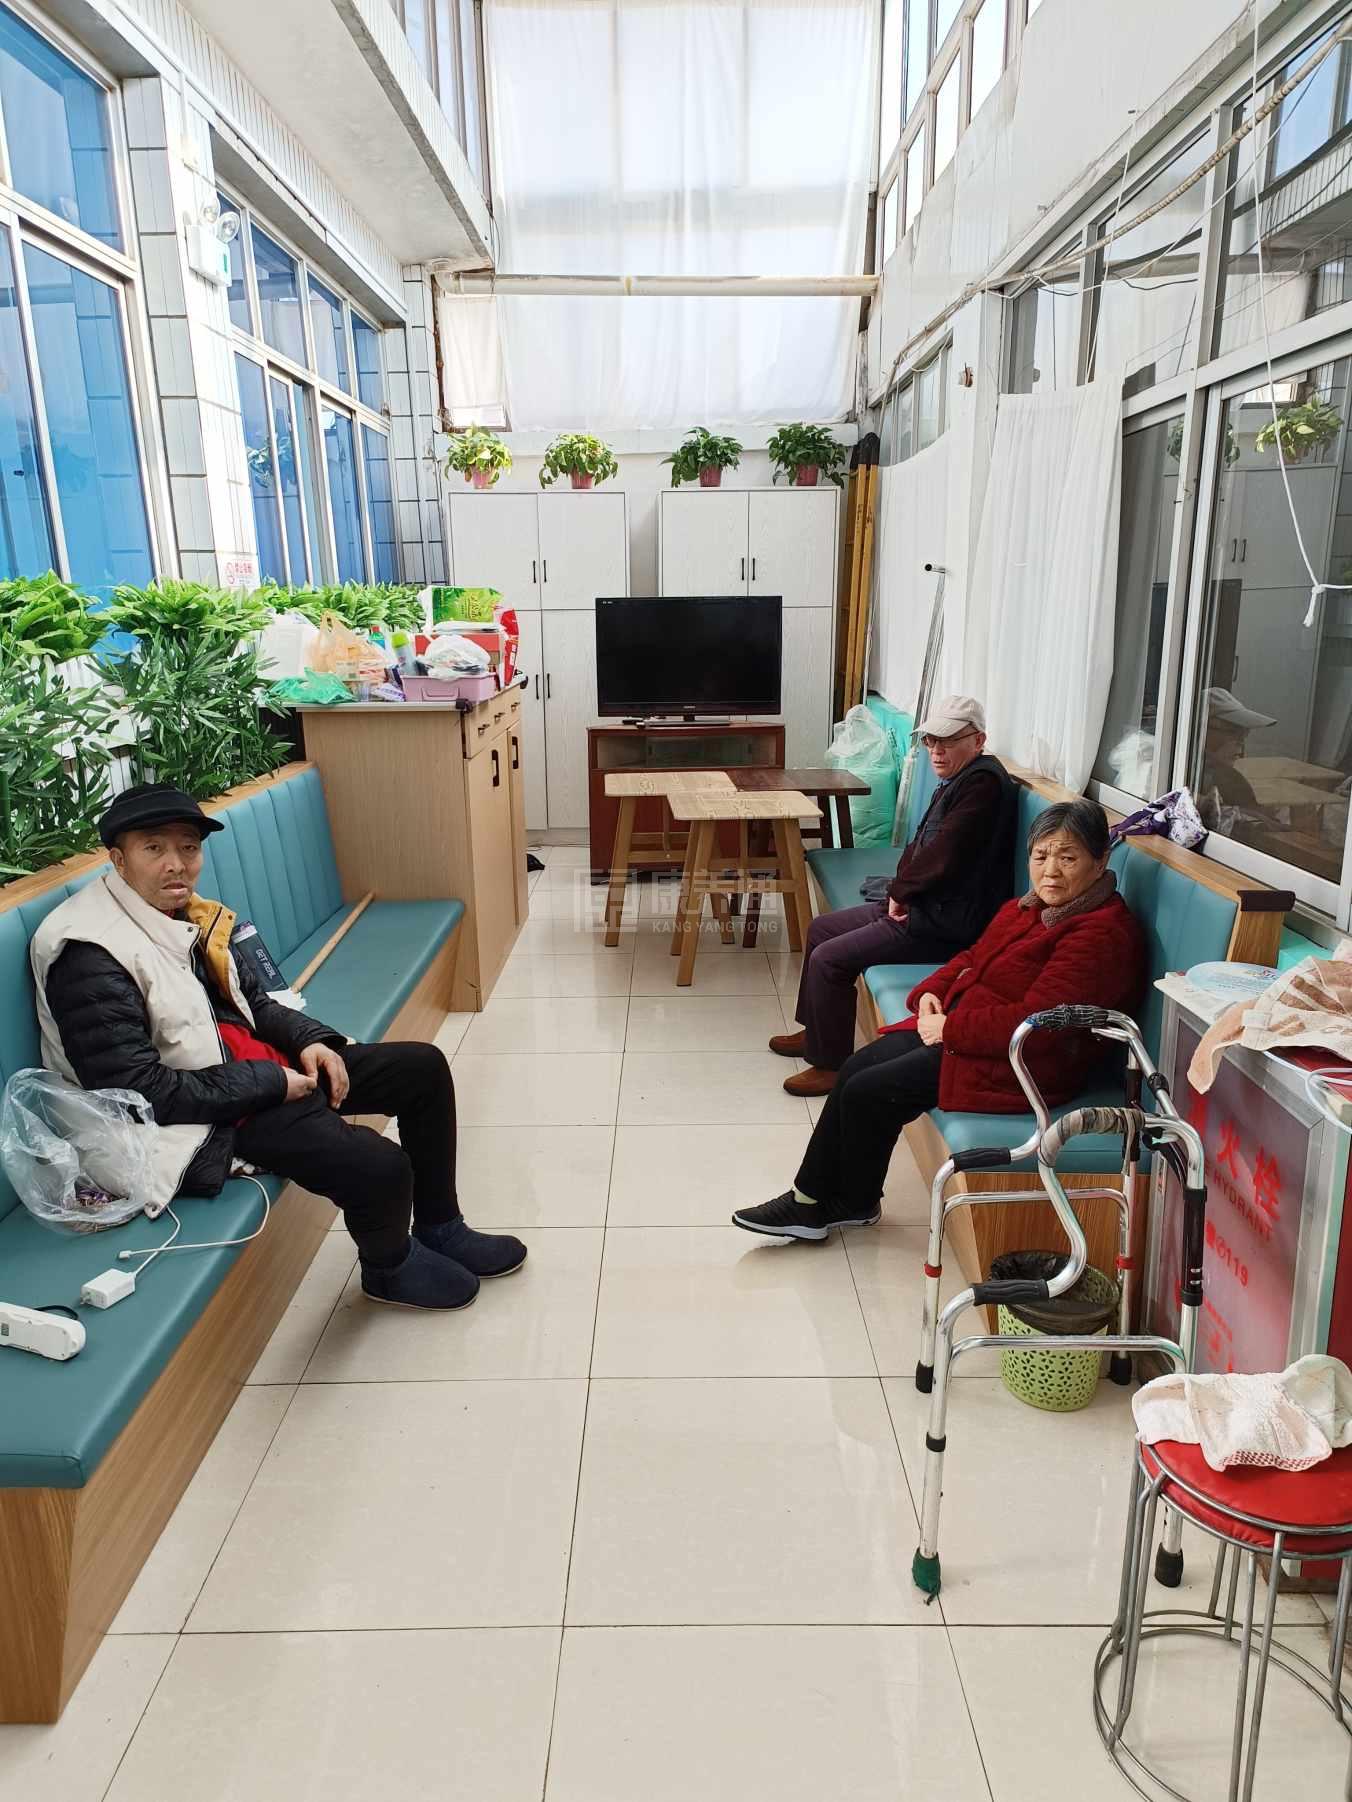 天津市蓟州区耐心养老服务中心服务项目图1健康安全、营养均衡、味美可口